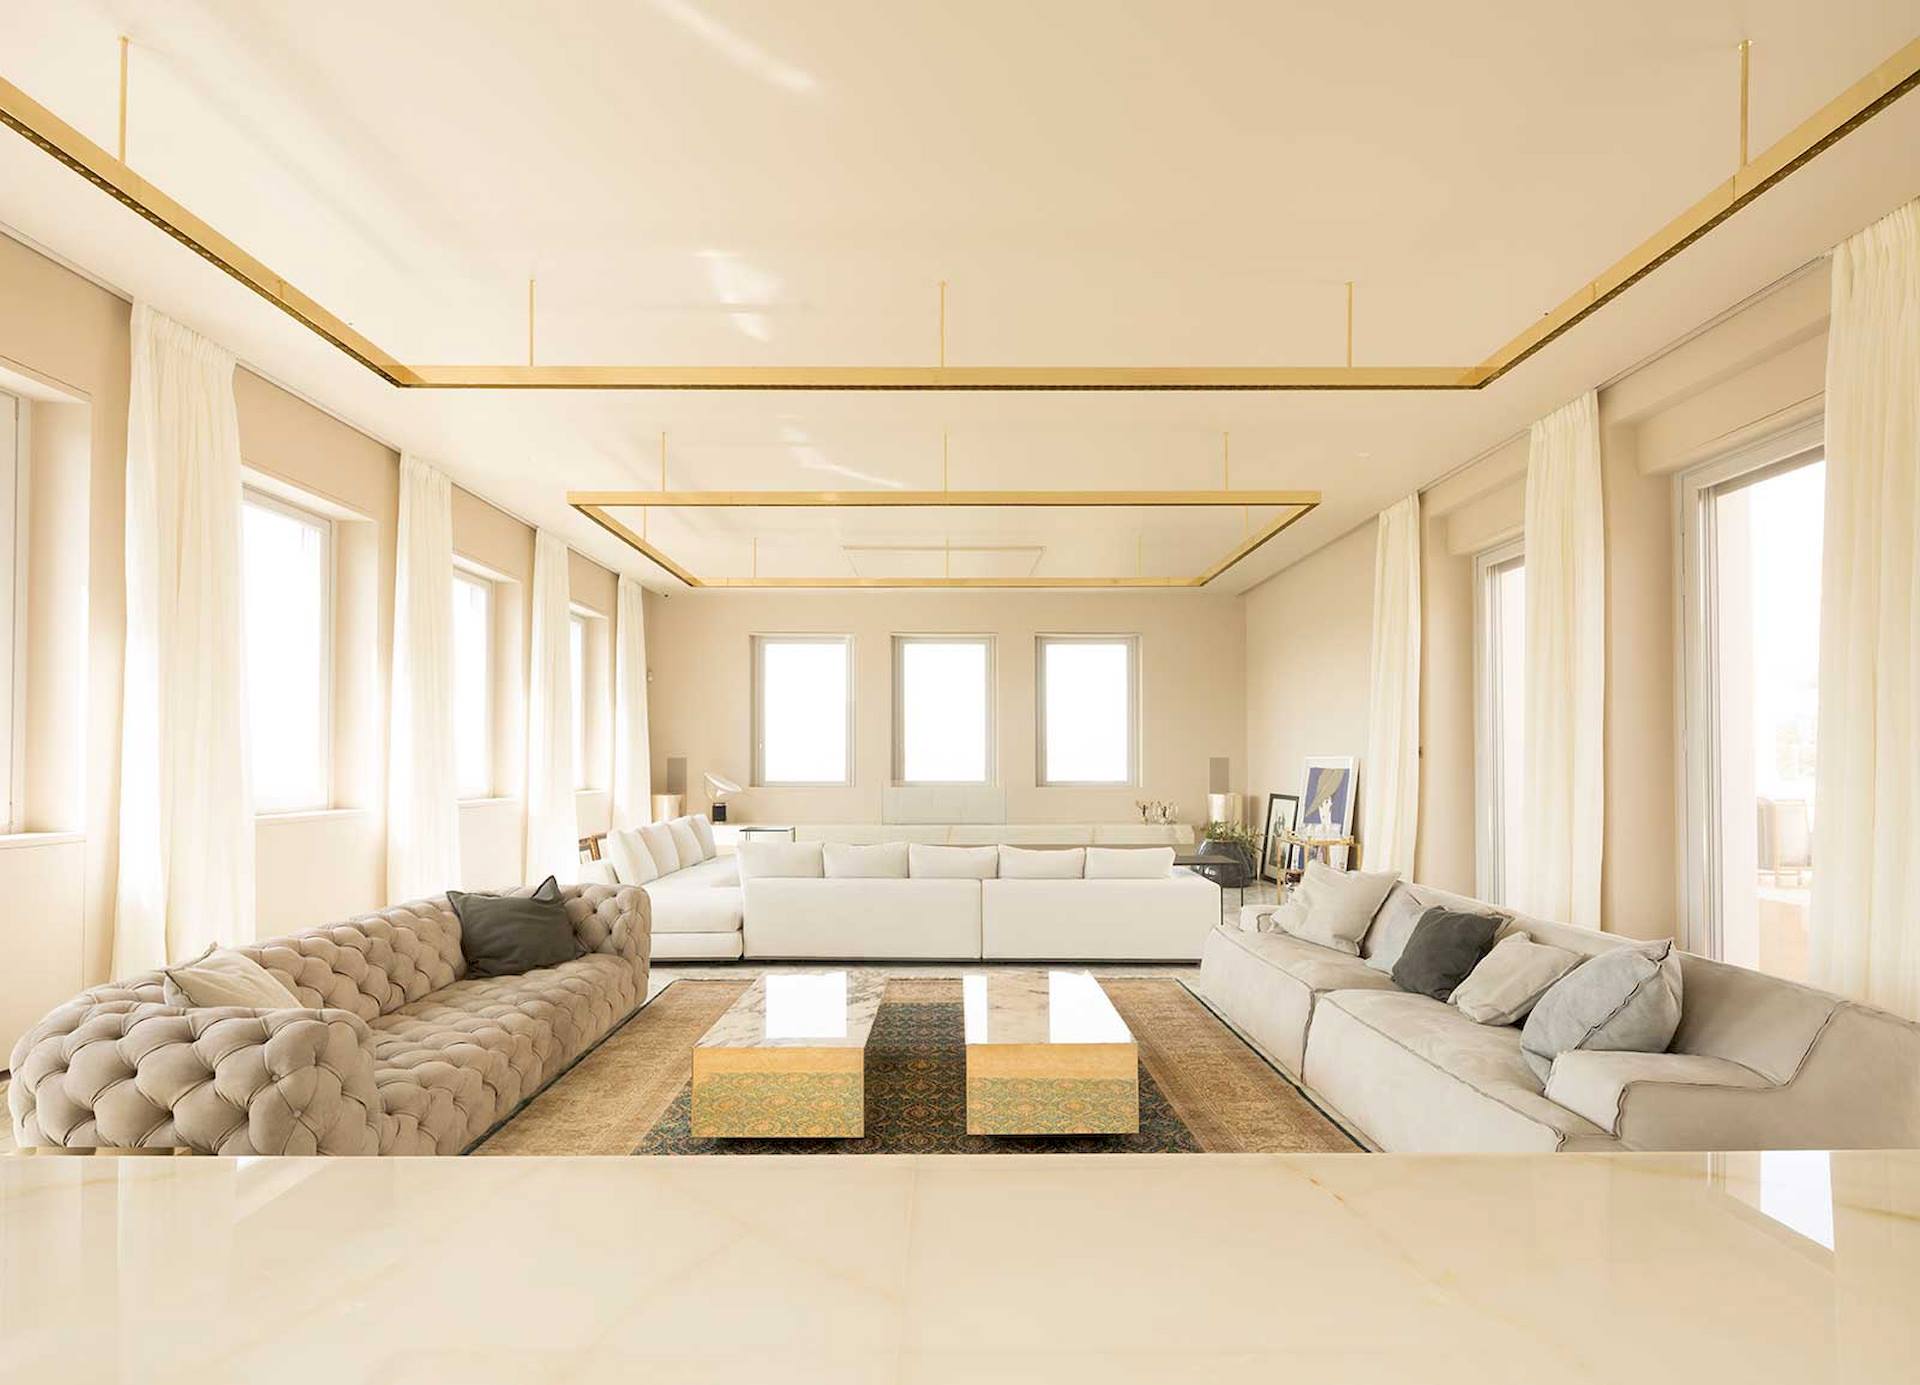 divani open space salotto mobili la villa sul palazzo attico luxury ramon estive architetto roma lavoro realizzato dal gruppo rodi 